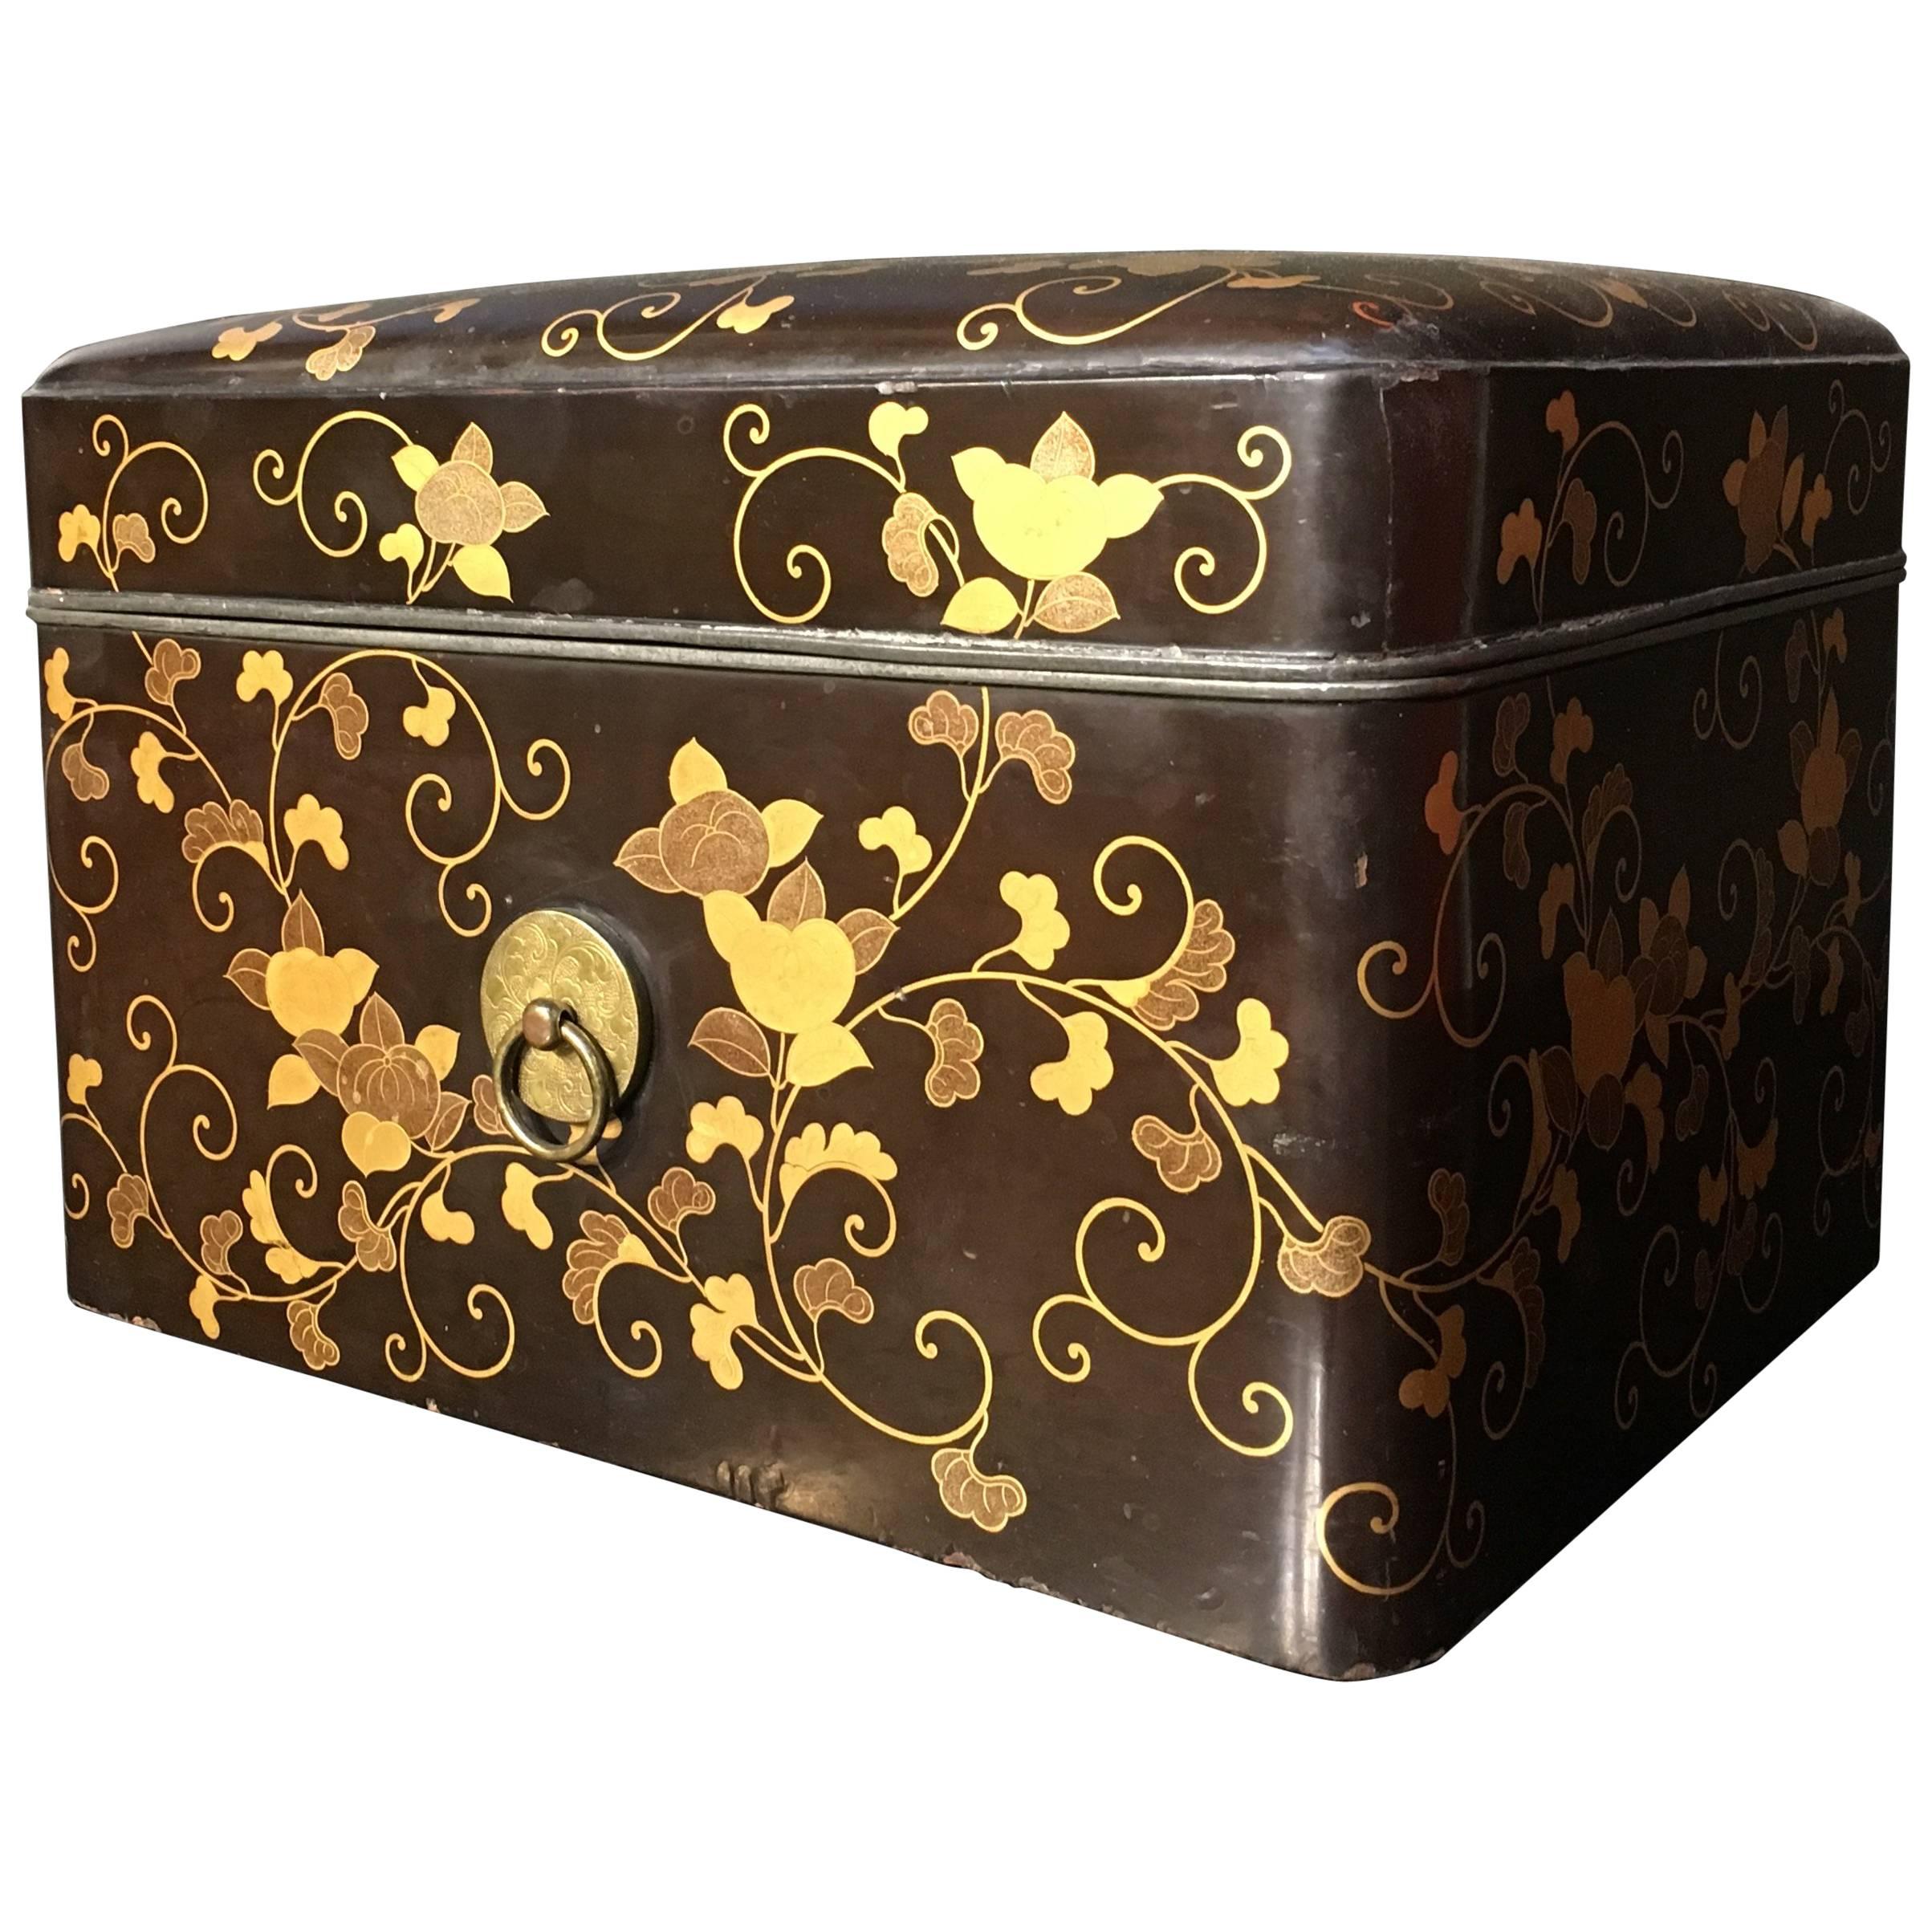 19th Century Japanese Edo Period Maki-e Decorated Black Lacquer Box and Tray